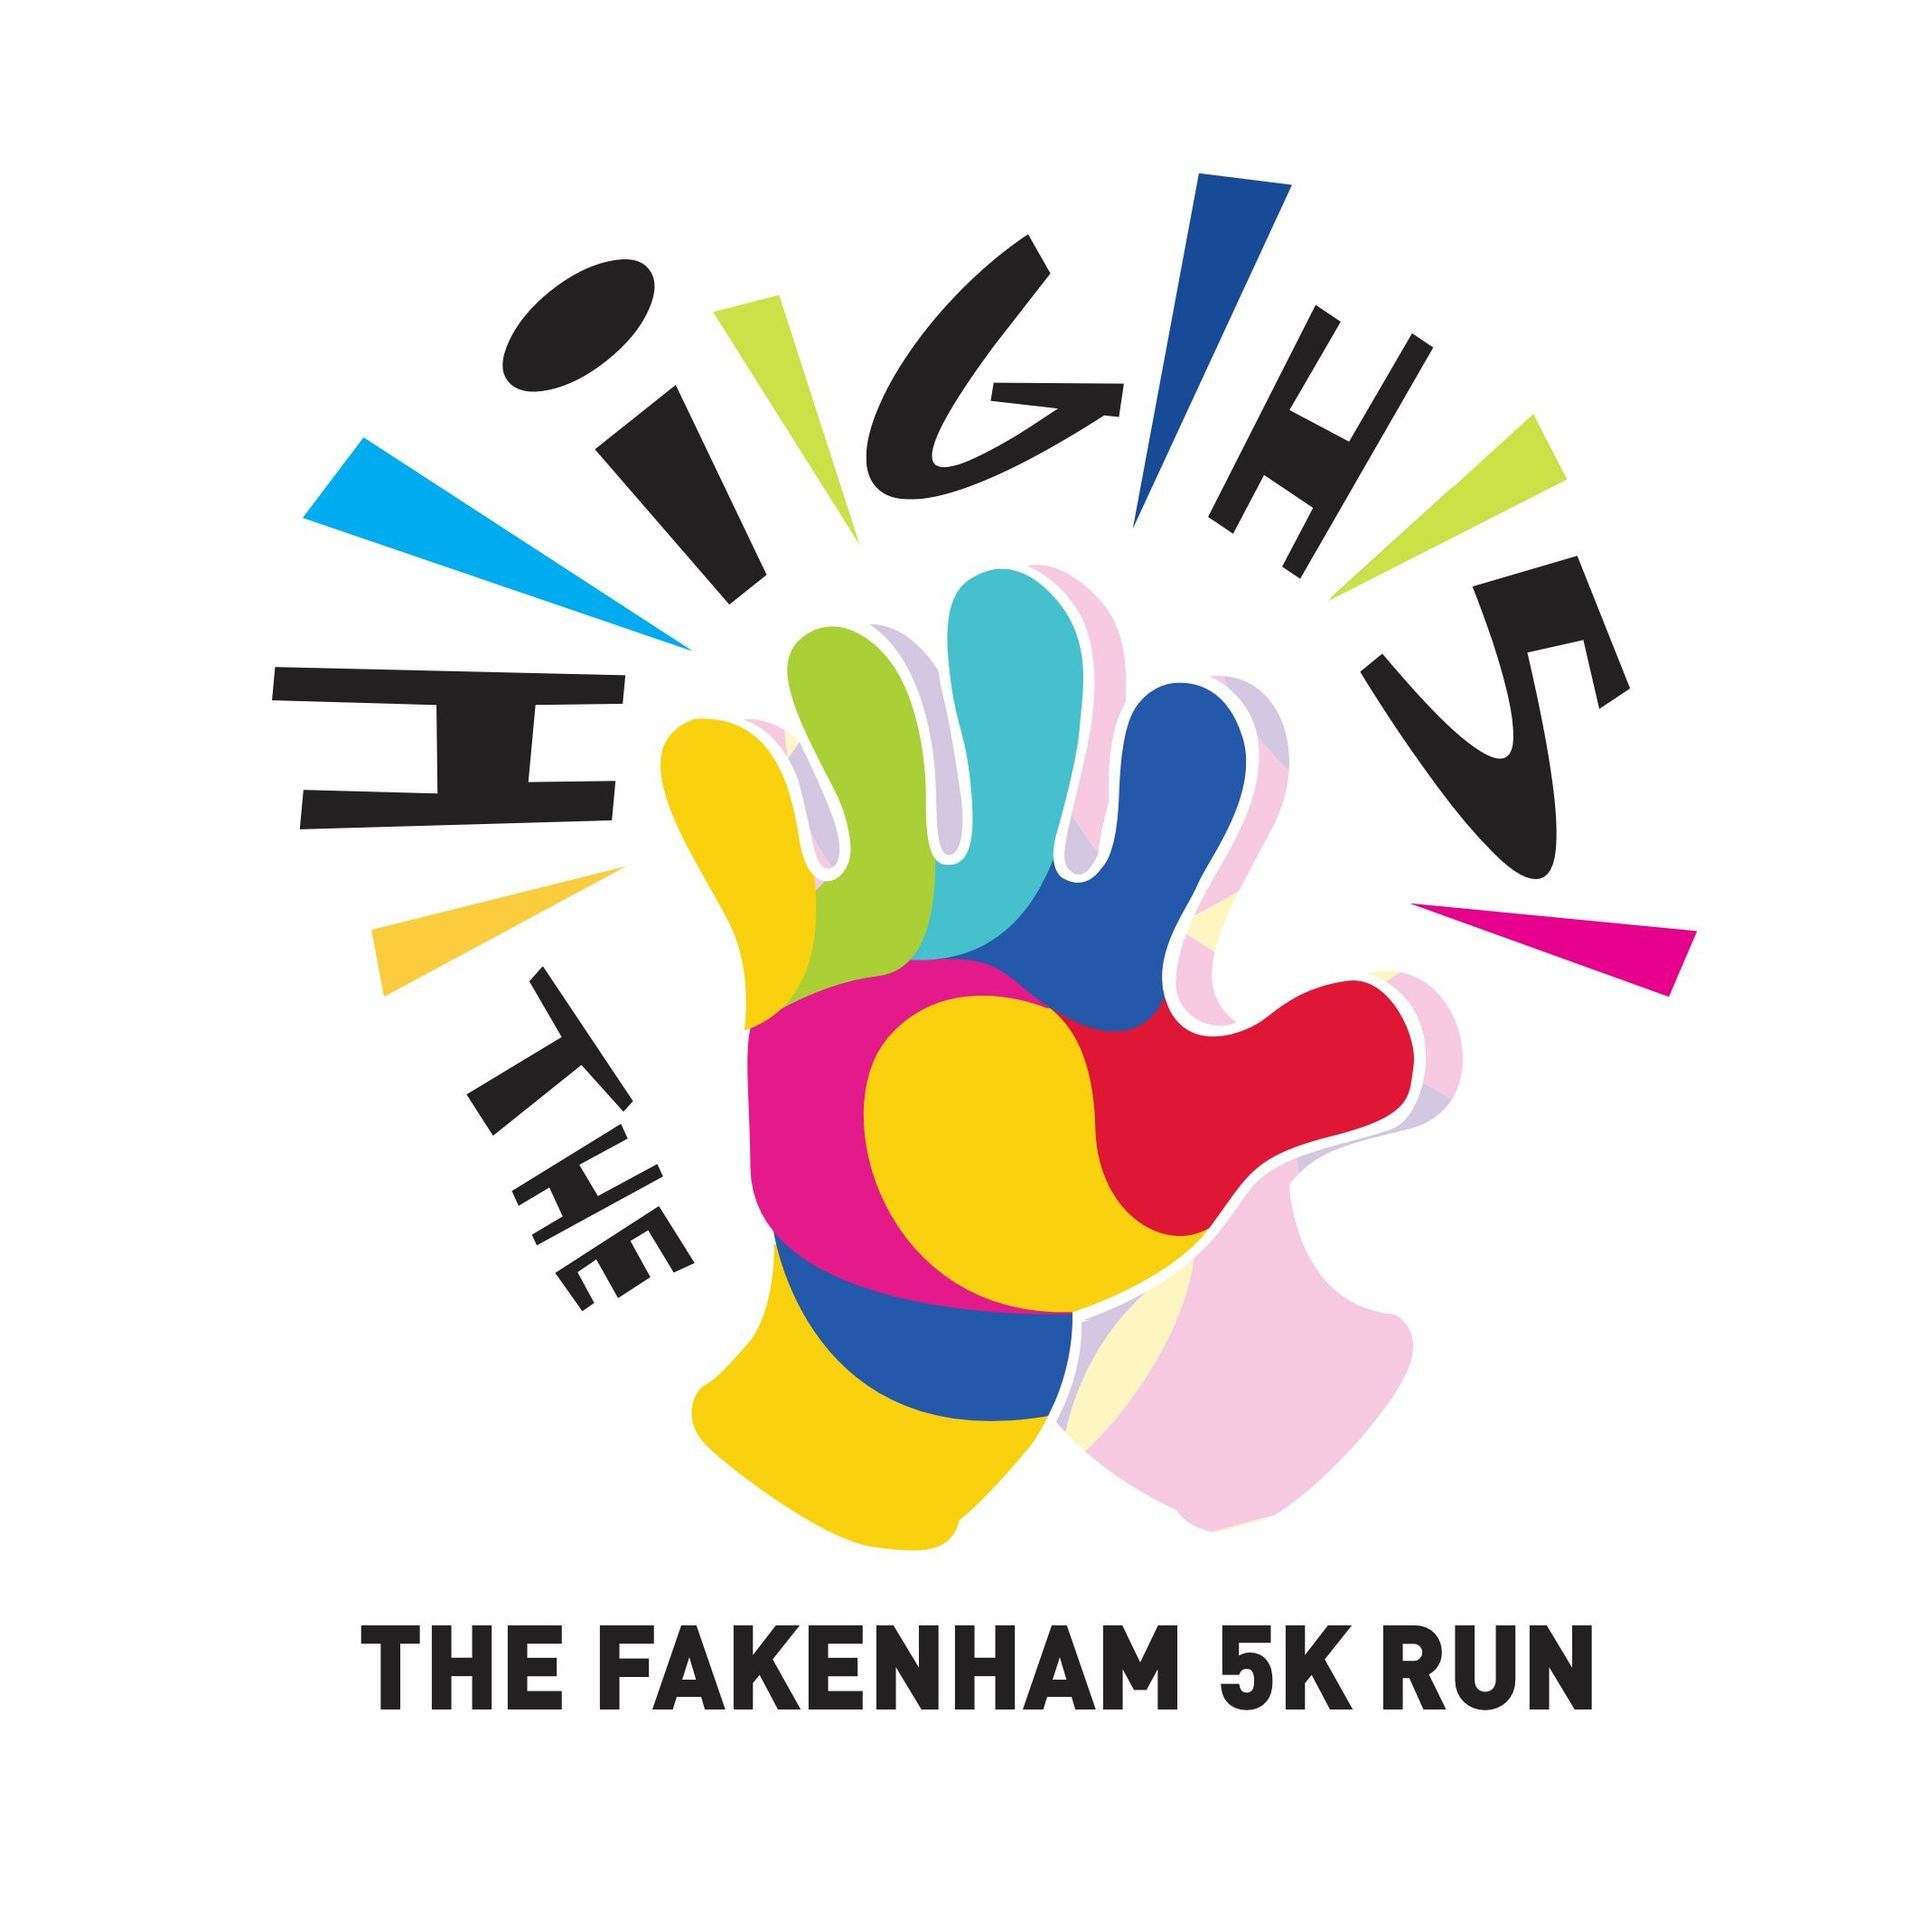 The Fakenham 5K Run